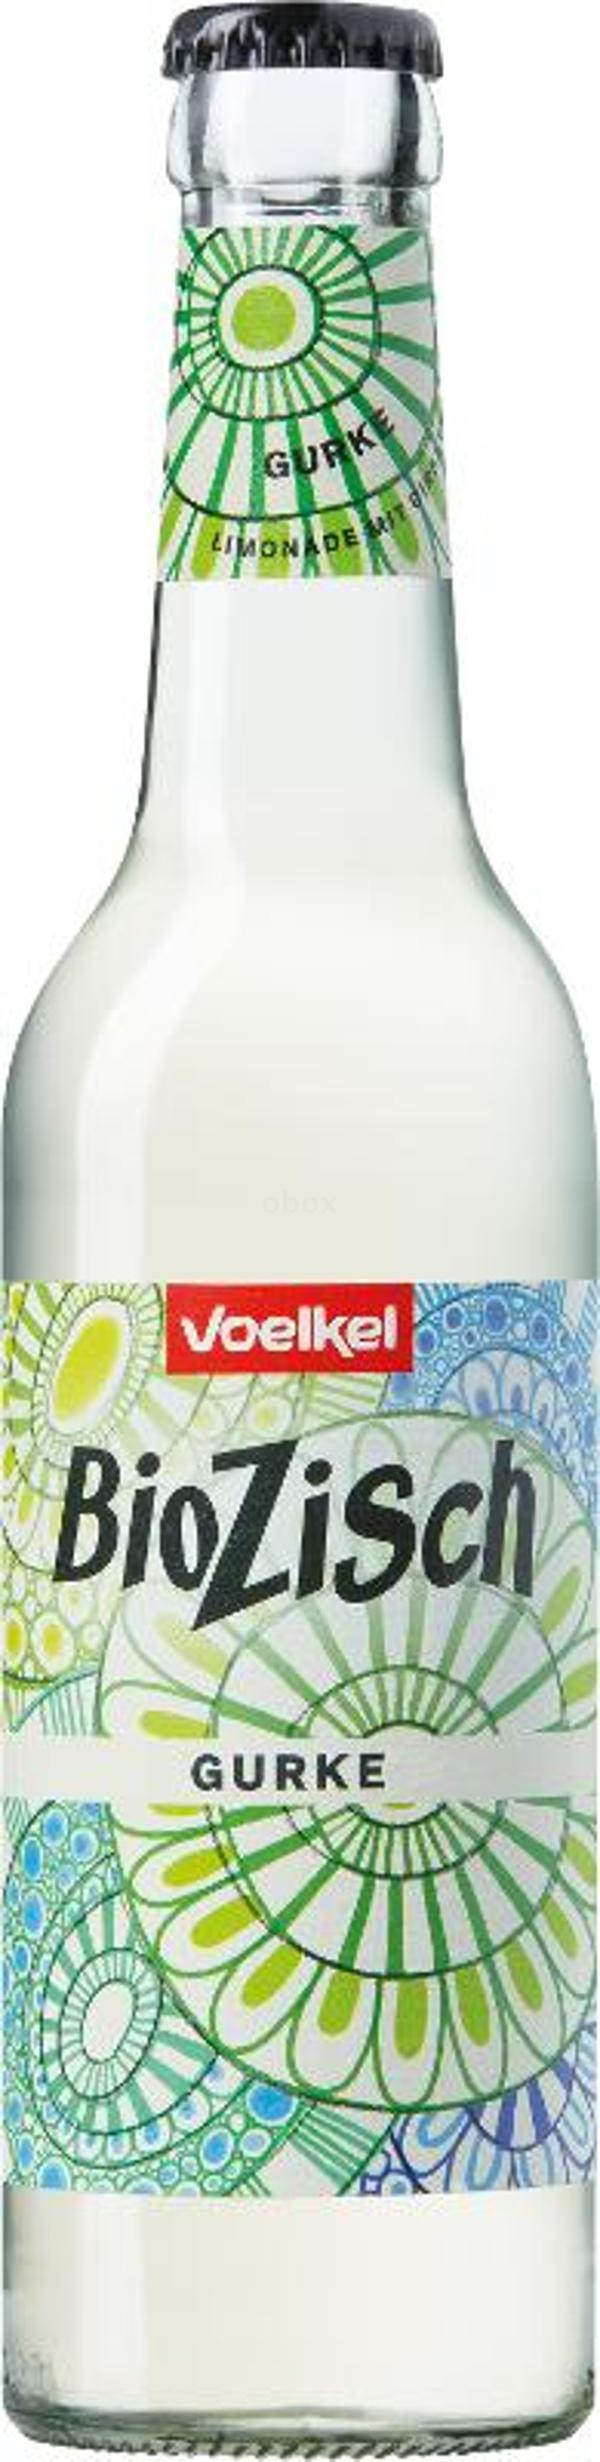 Produktfoto zu Bio Zisch Gurke - 12 x 0,33l